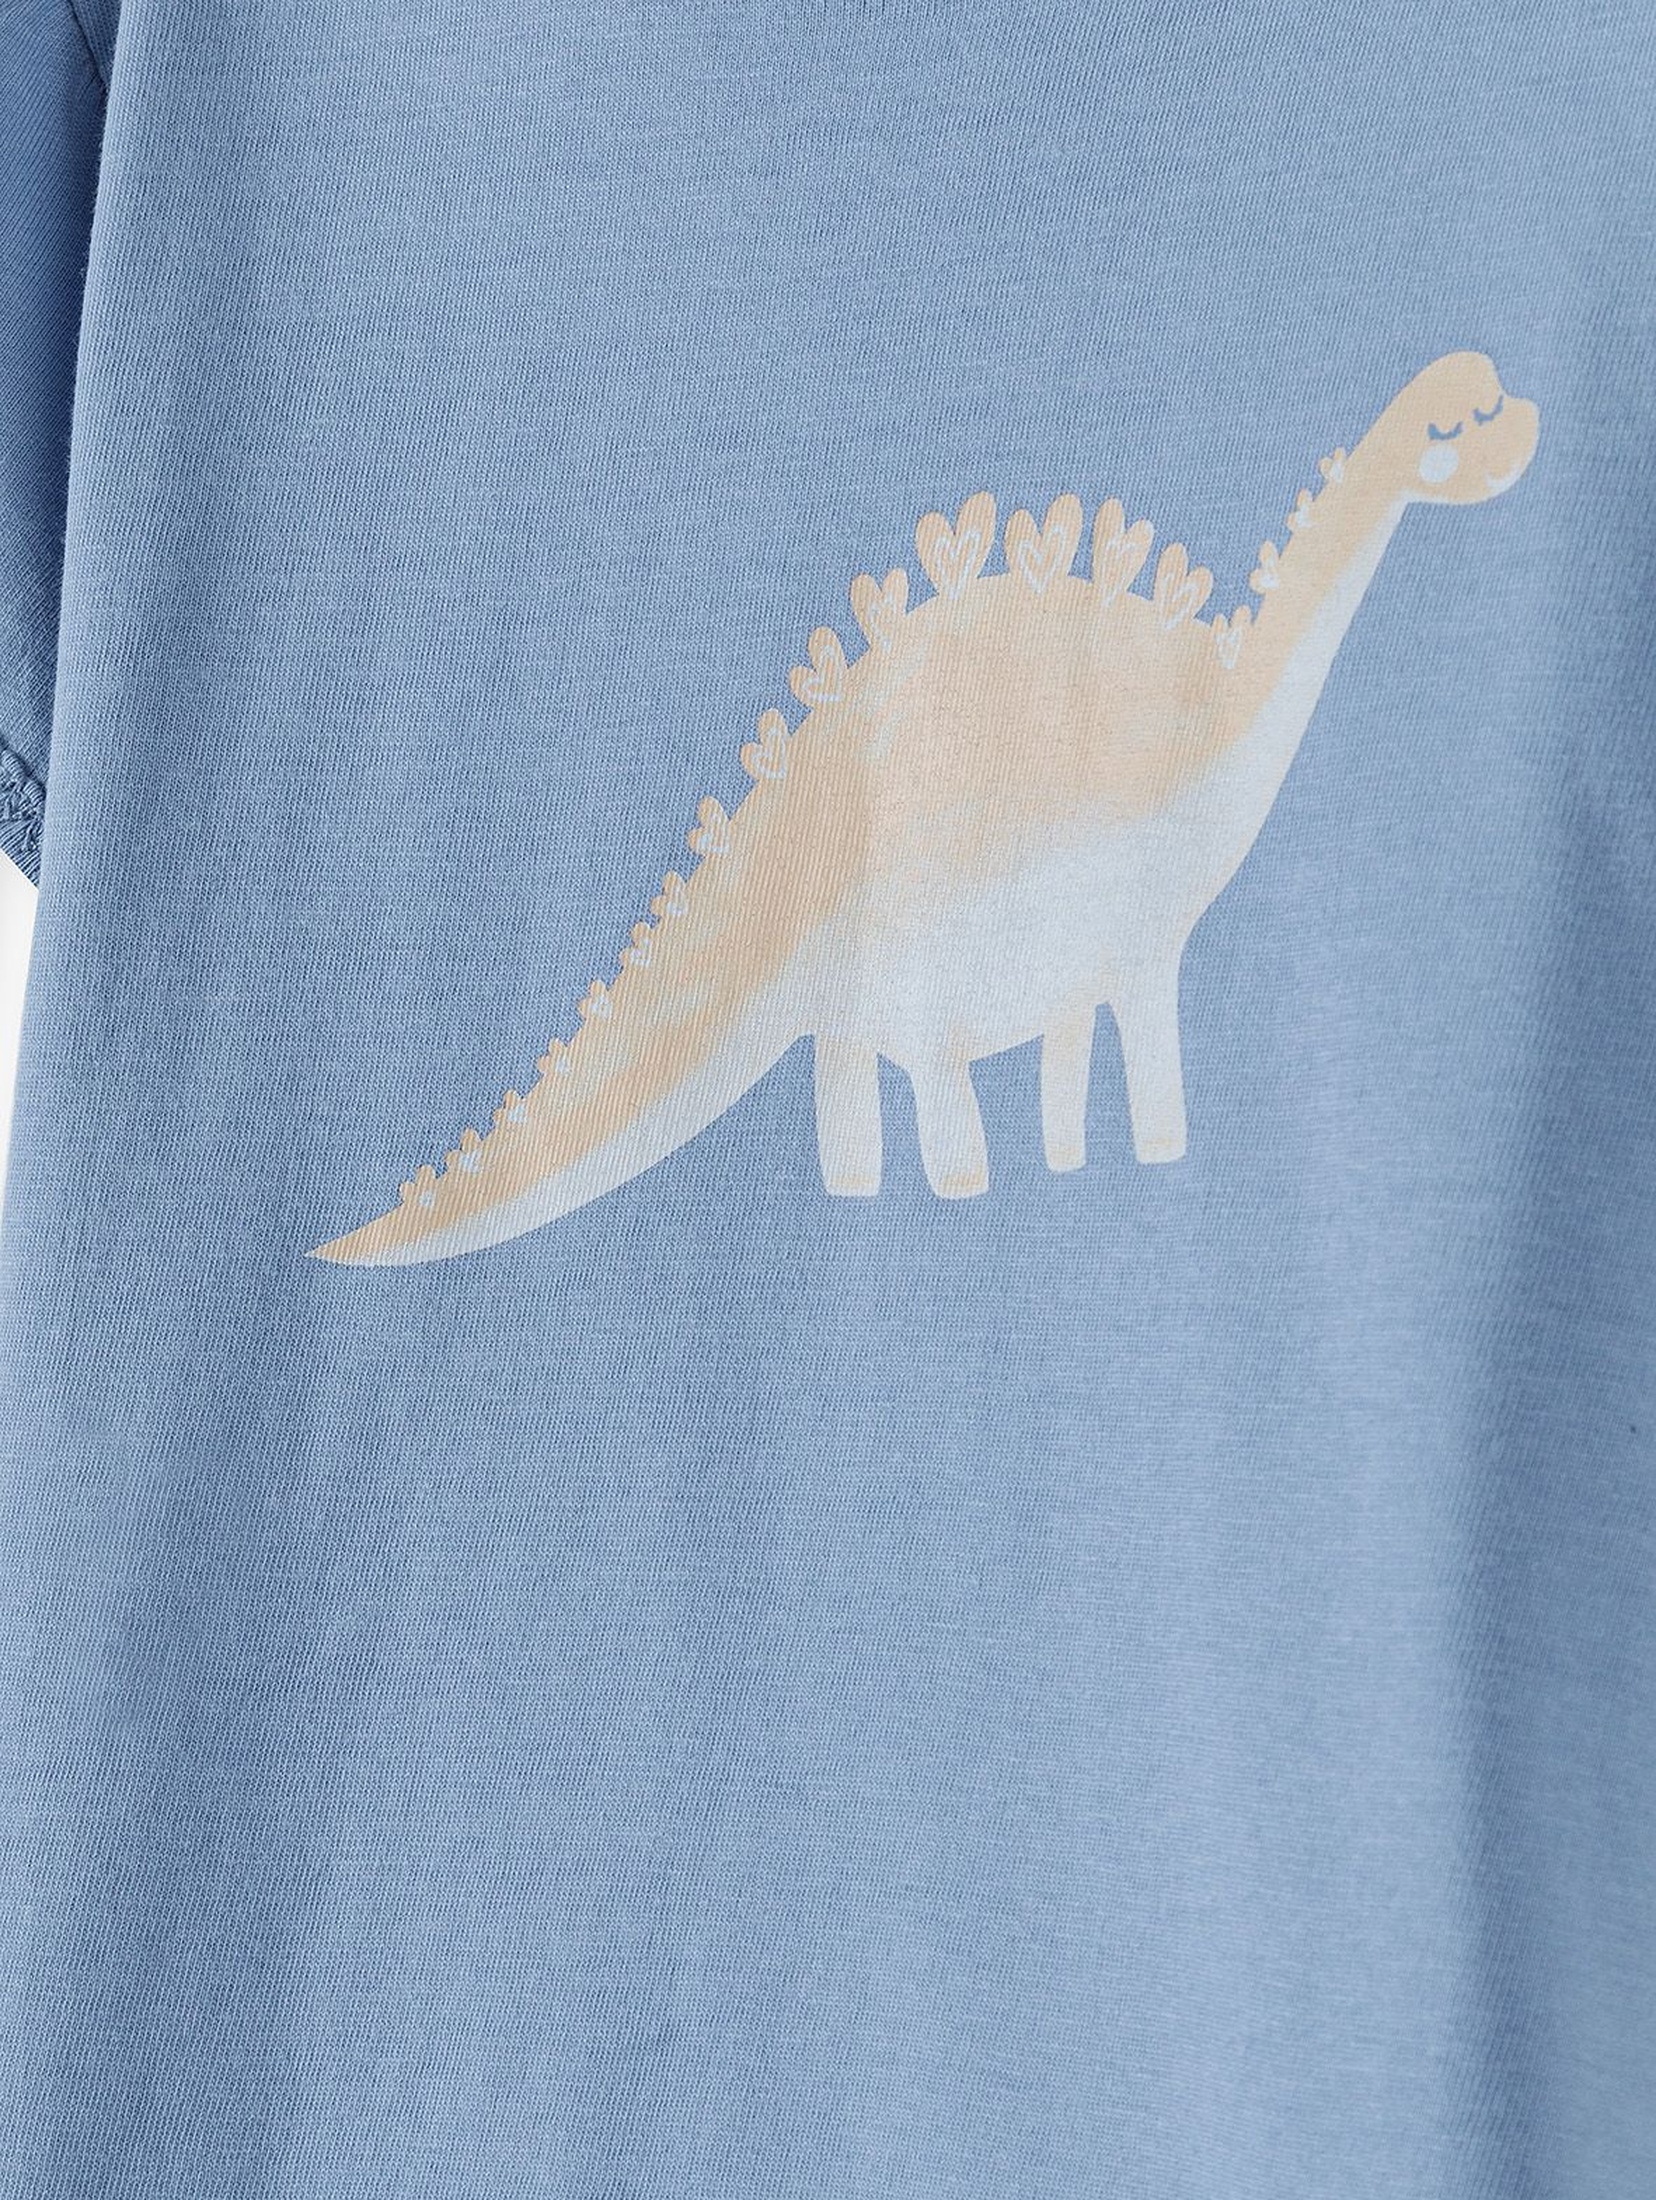 Bawełniany niebieski t-shirt dziewczęcy z dinozaurem